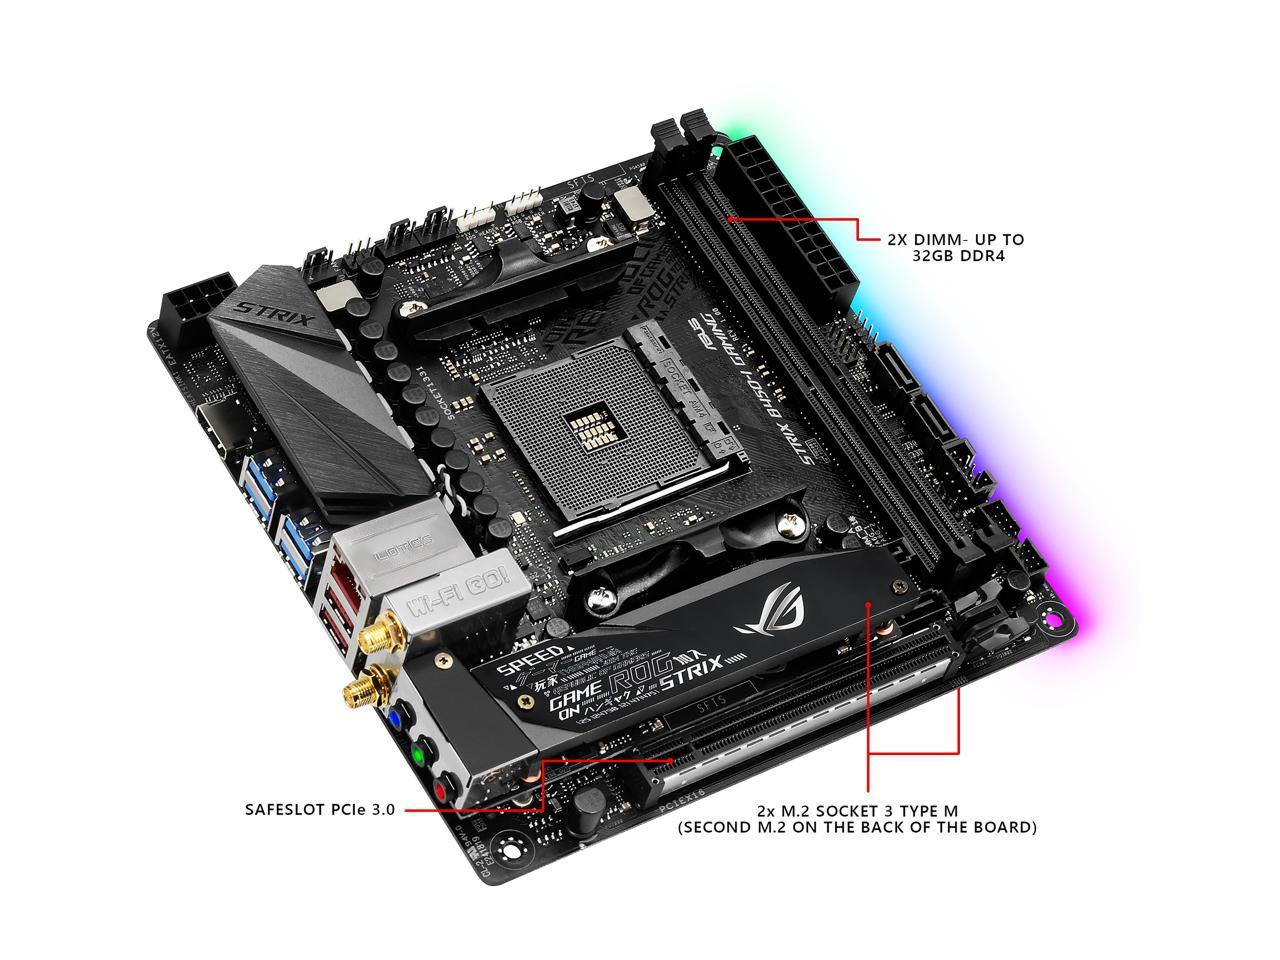 ASUS ROG STRIX B450-I GAMING AM4 AMD B450 SATA 6Gb/s USB 3.1 HDMI Mini ITX  AMD Motherboard